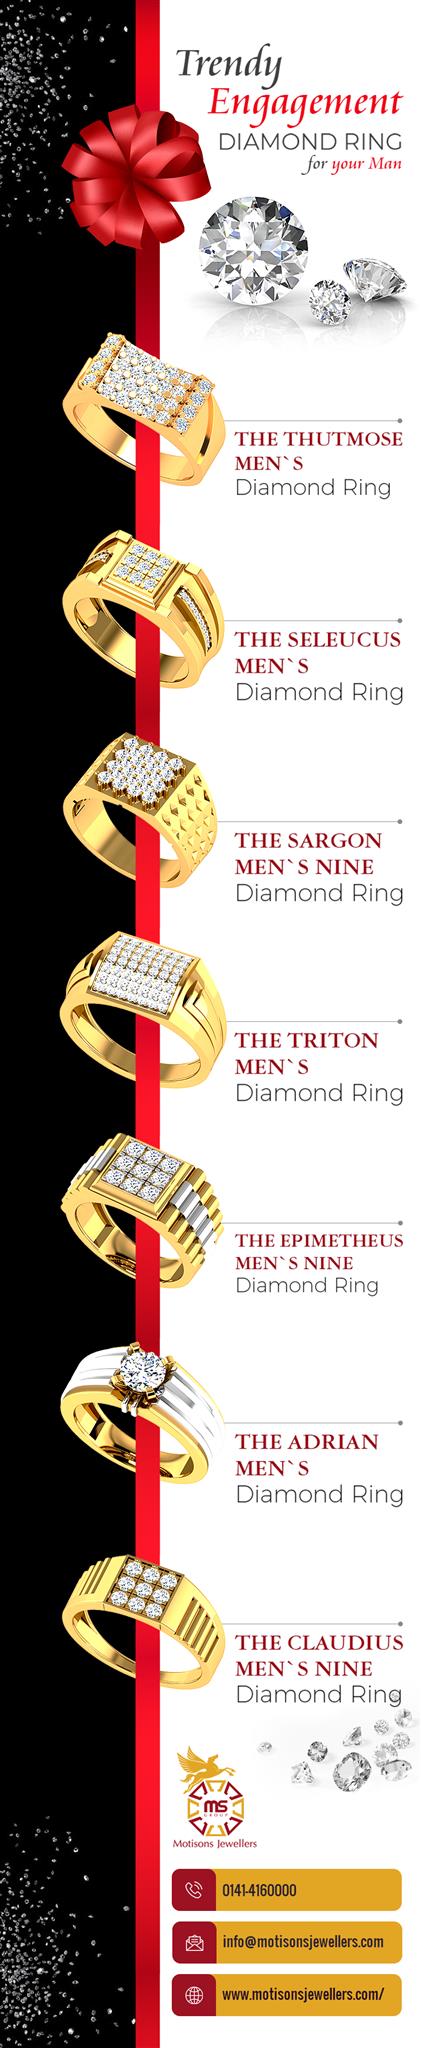 Trendy-Engagement-Diamond-Ring-for-your-Man.jpg